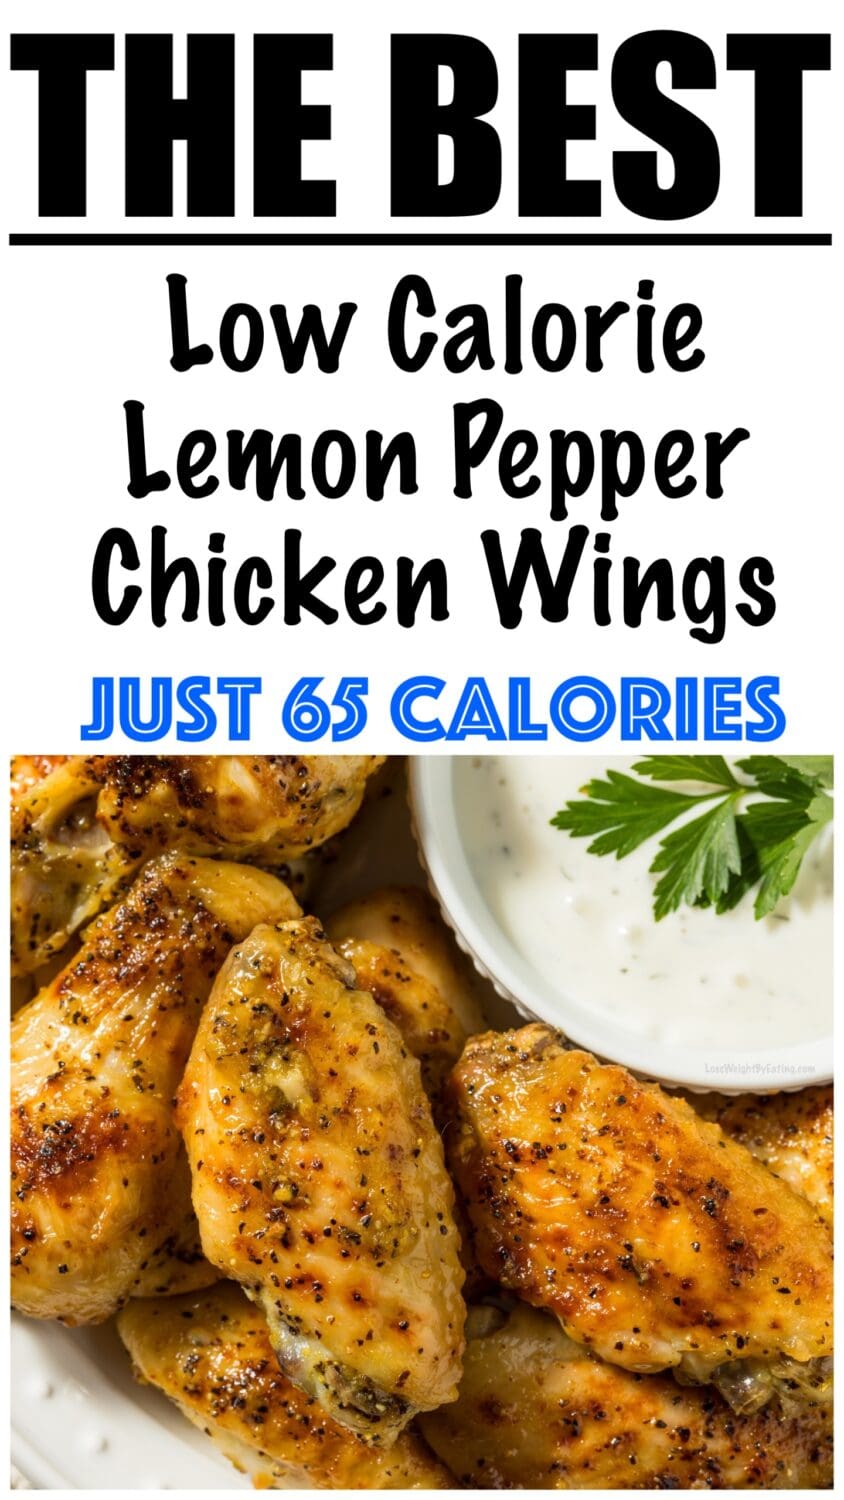 Low Calorie Lemon Pepper Chicken Wings